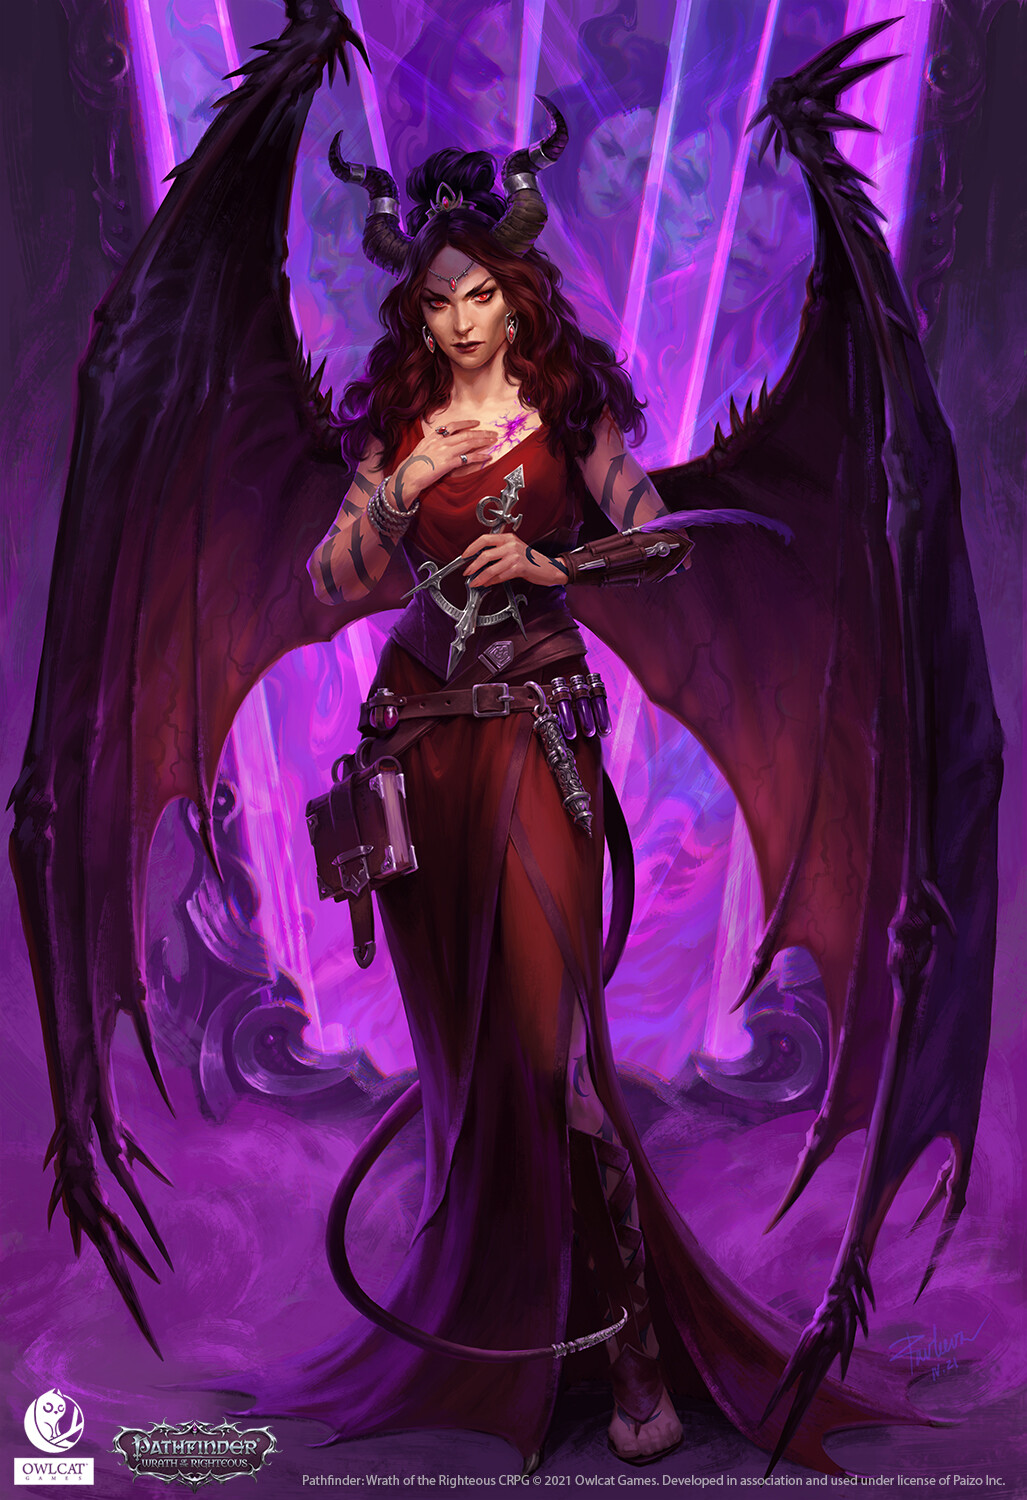 Anna Pavleeva Artwork Women Fantasy Girl Fantasy Art Horns Wings Red Dress Red Clothing Long Hair Re 1027x1500